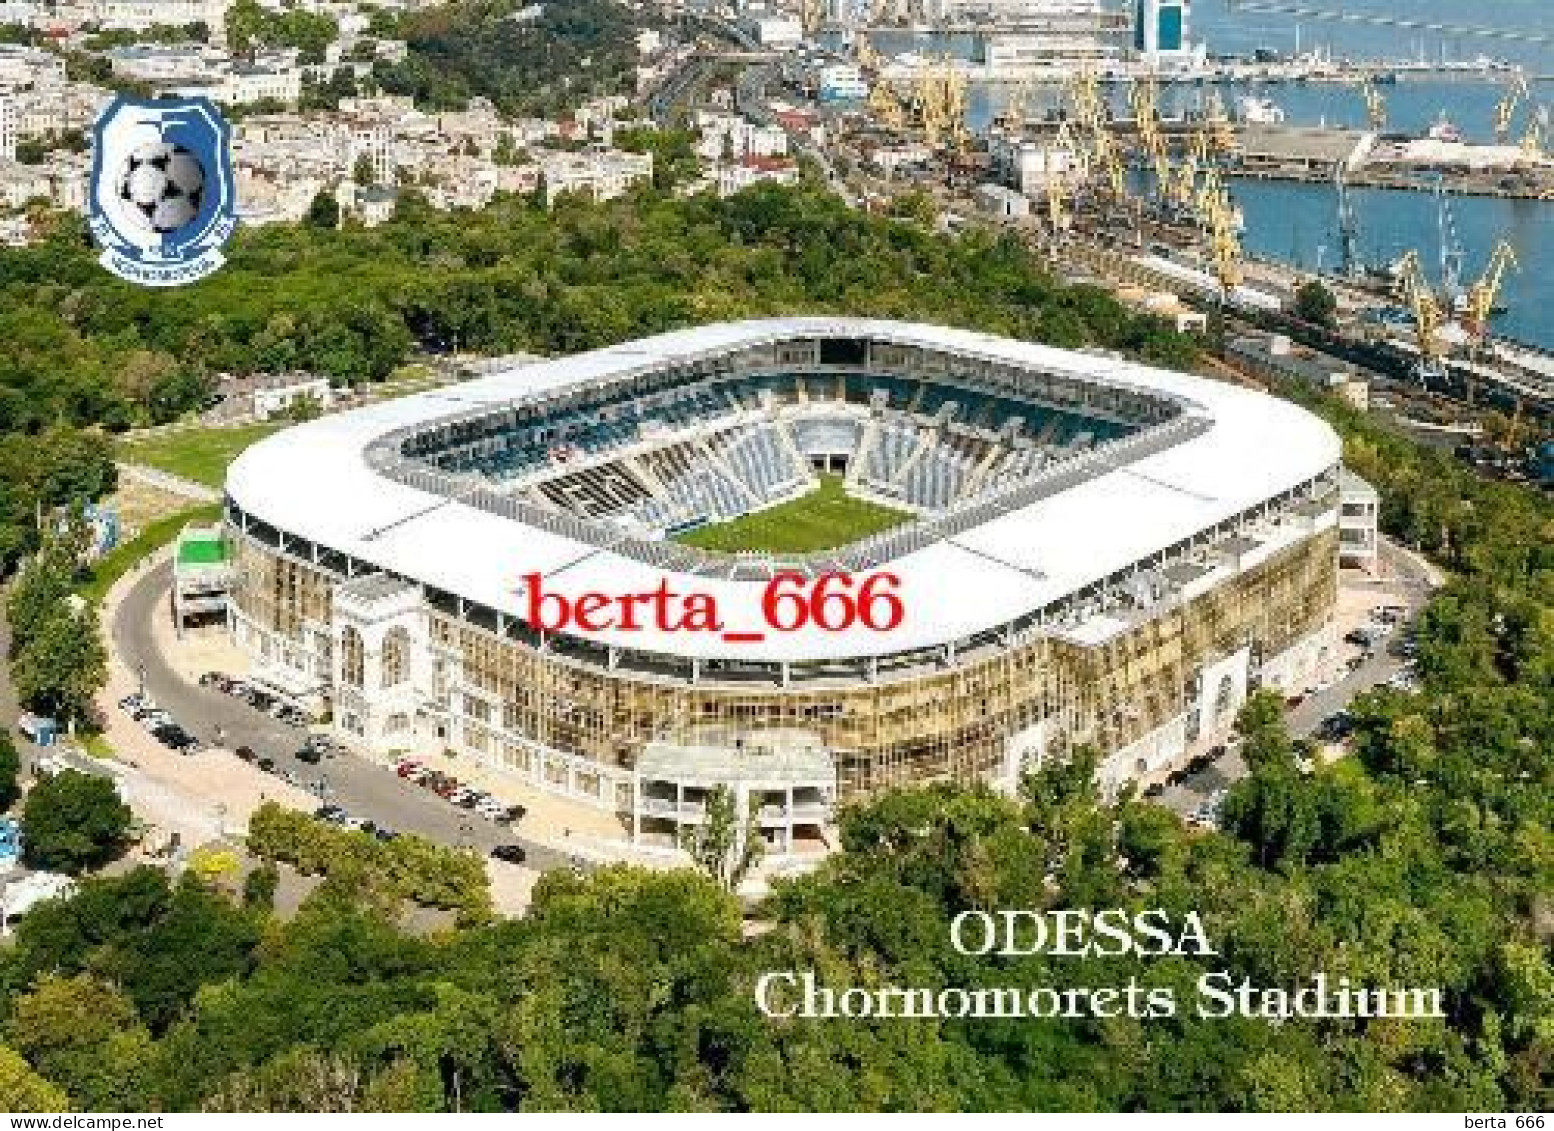 Ukraine Odessa Chornomorets Stadium Odesa New Postcard - Stadien